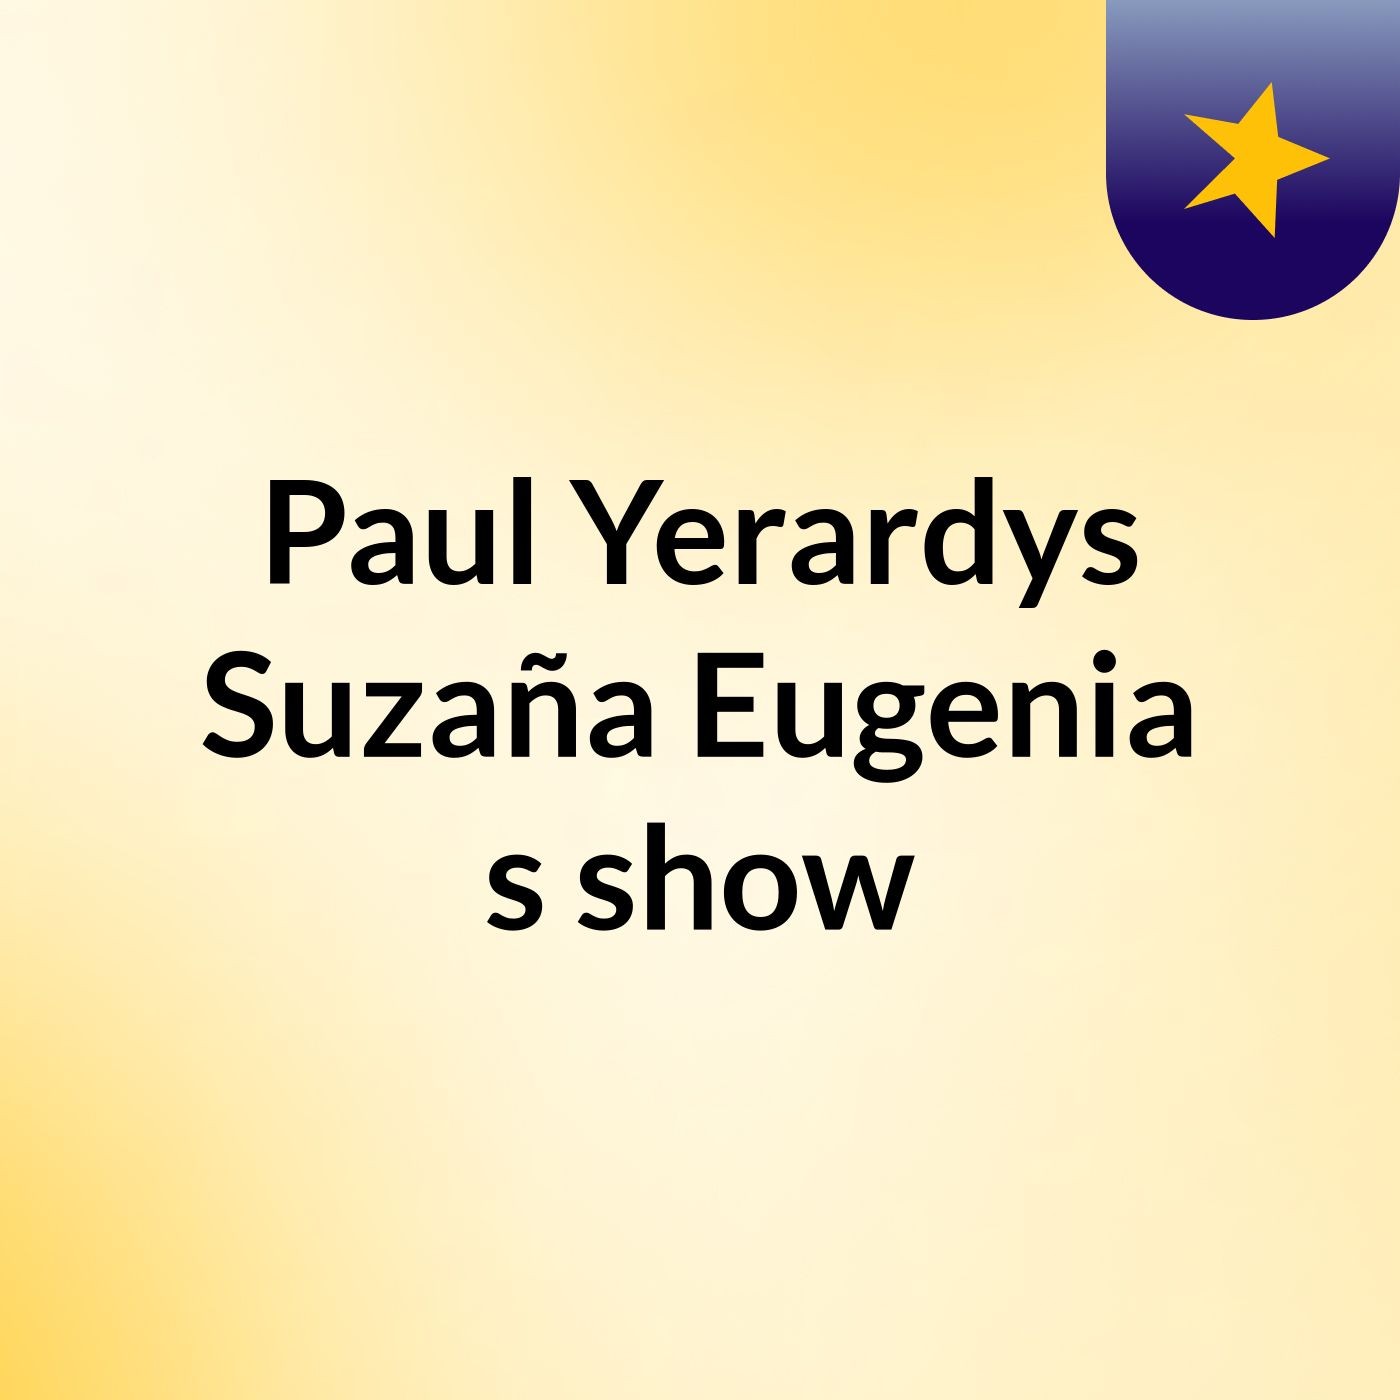 Paul Yerardys Suzaña Eugenia's show